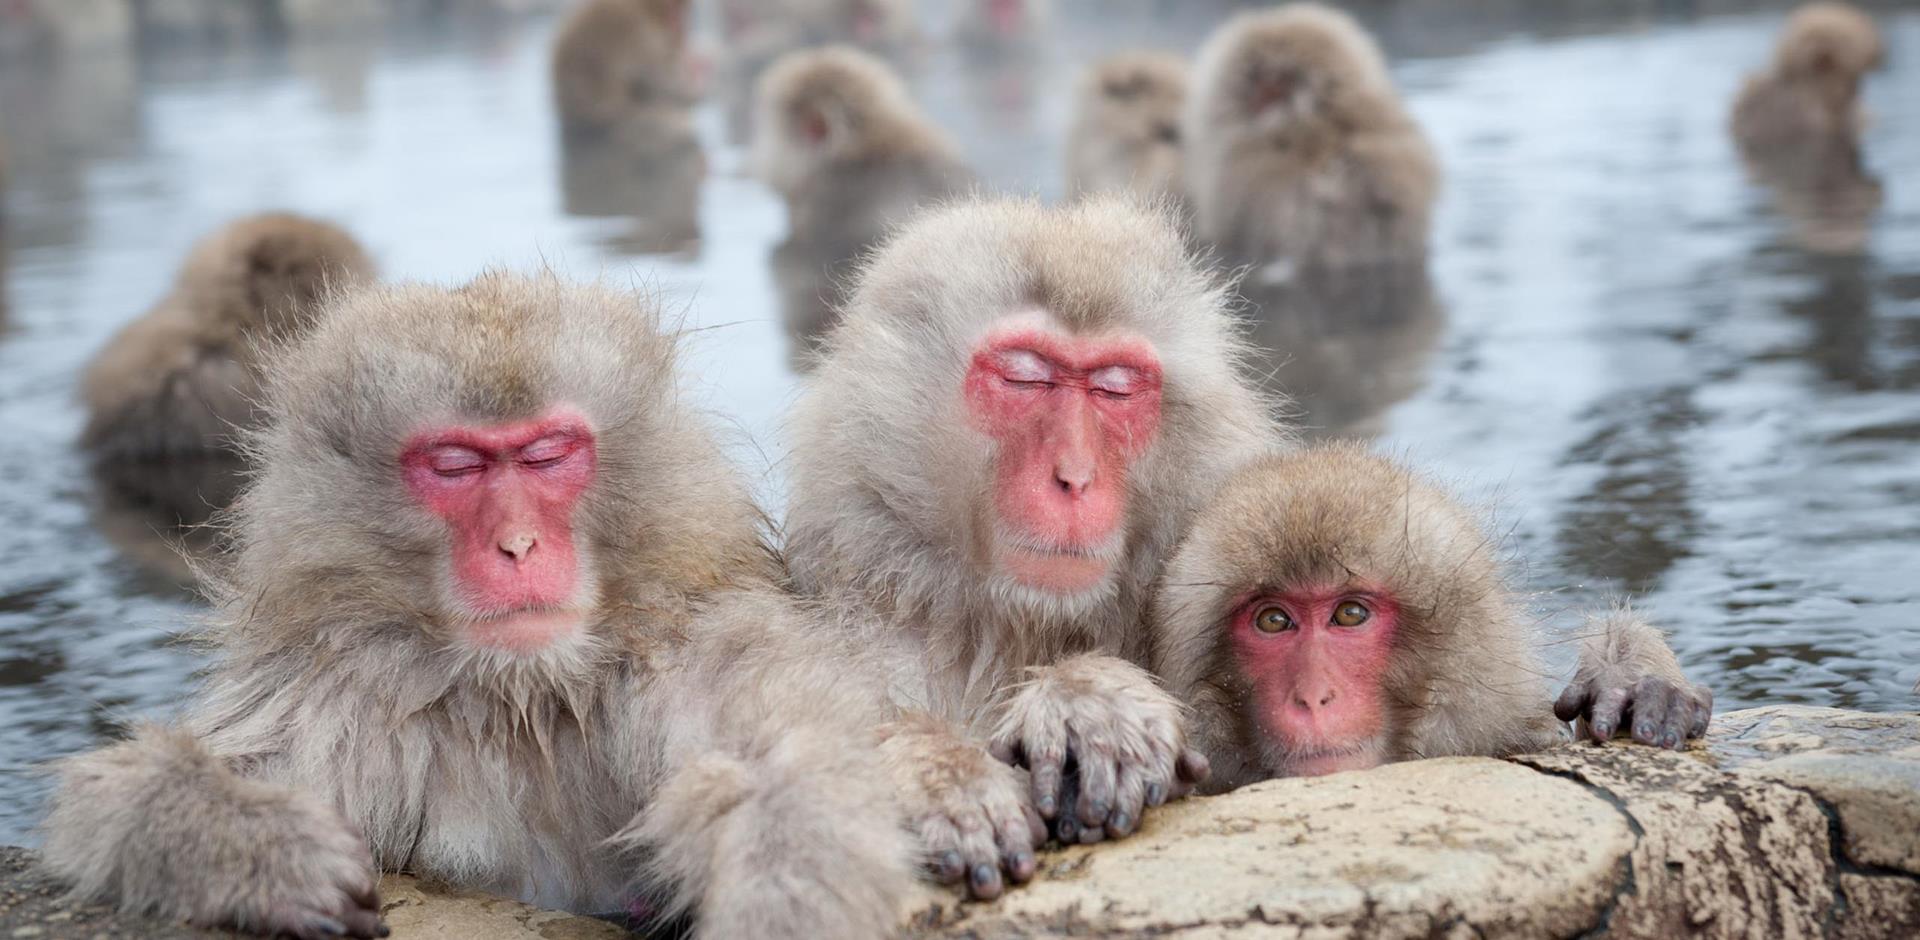 Meet Japans snow monkeys